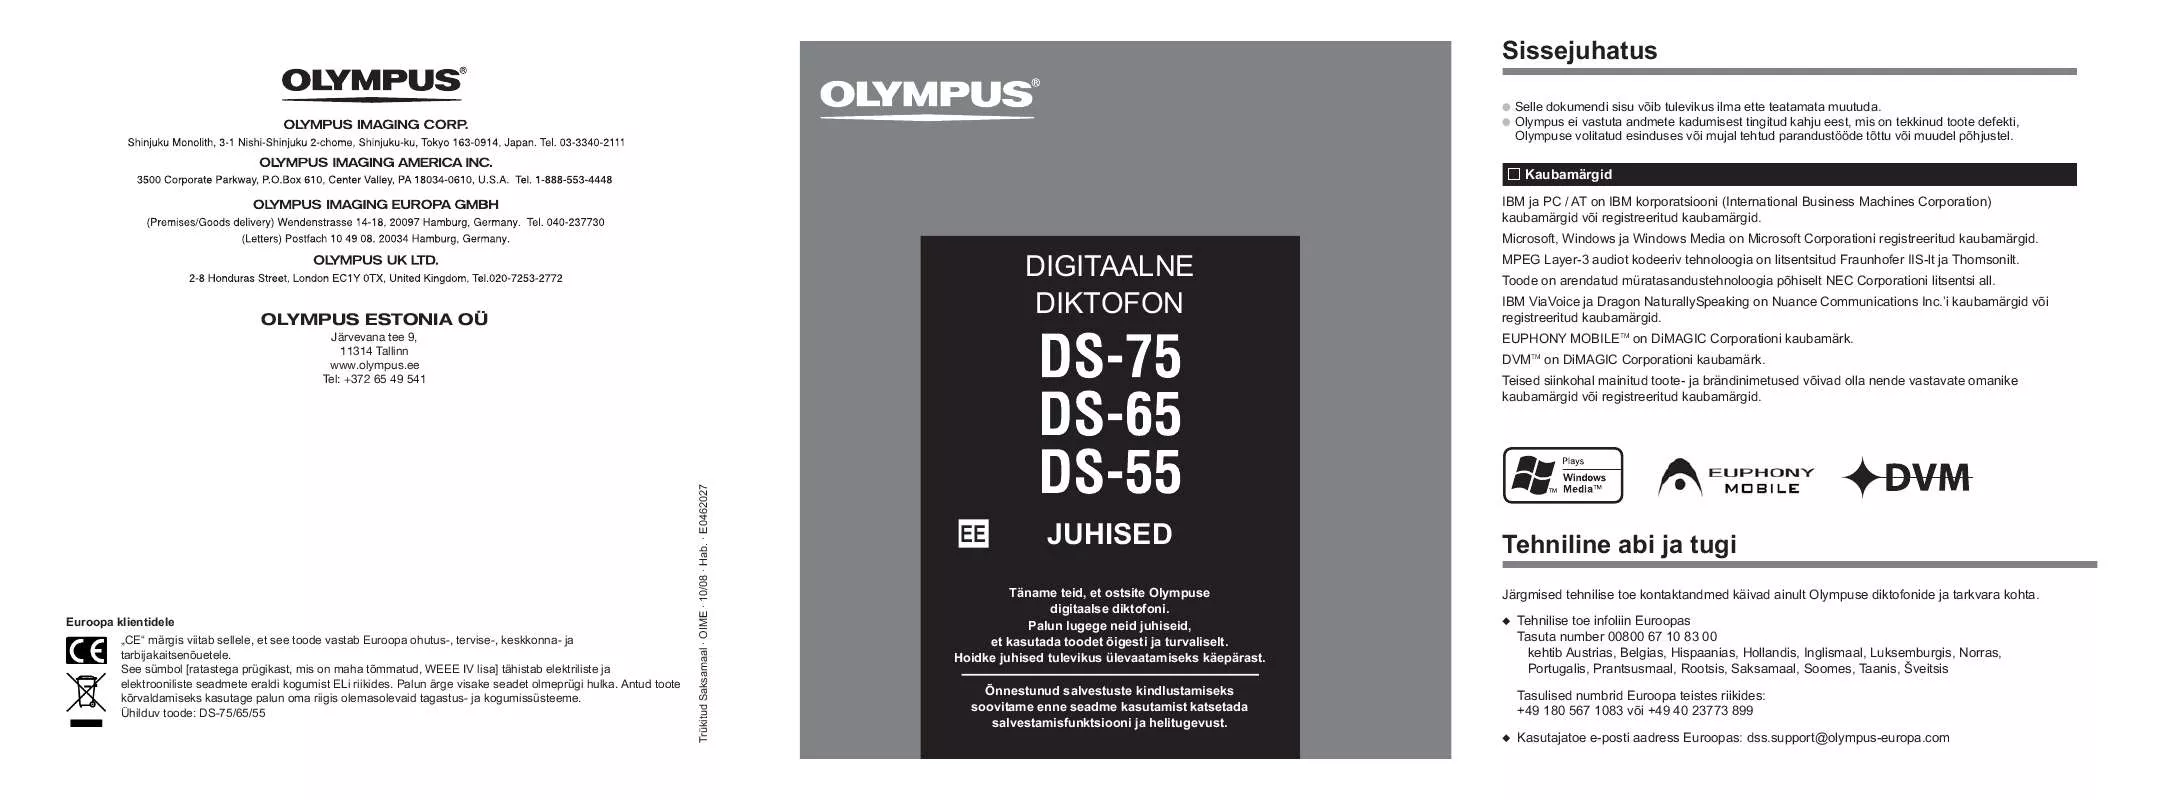 Mode d'emploi OLYMPUS DS-75